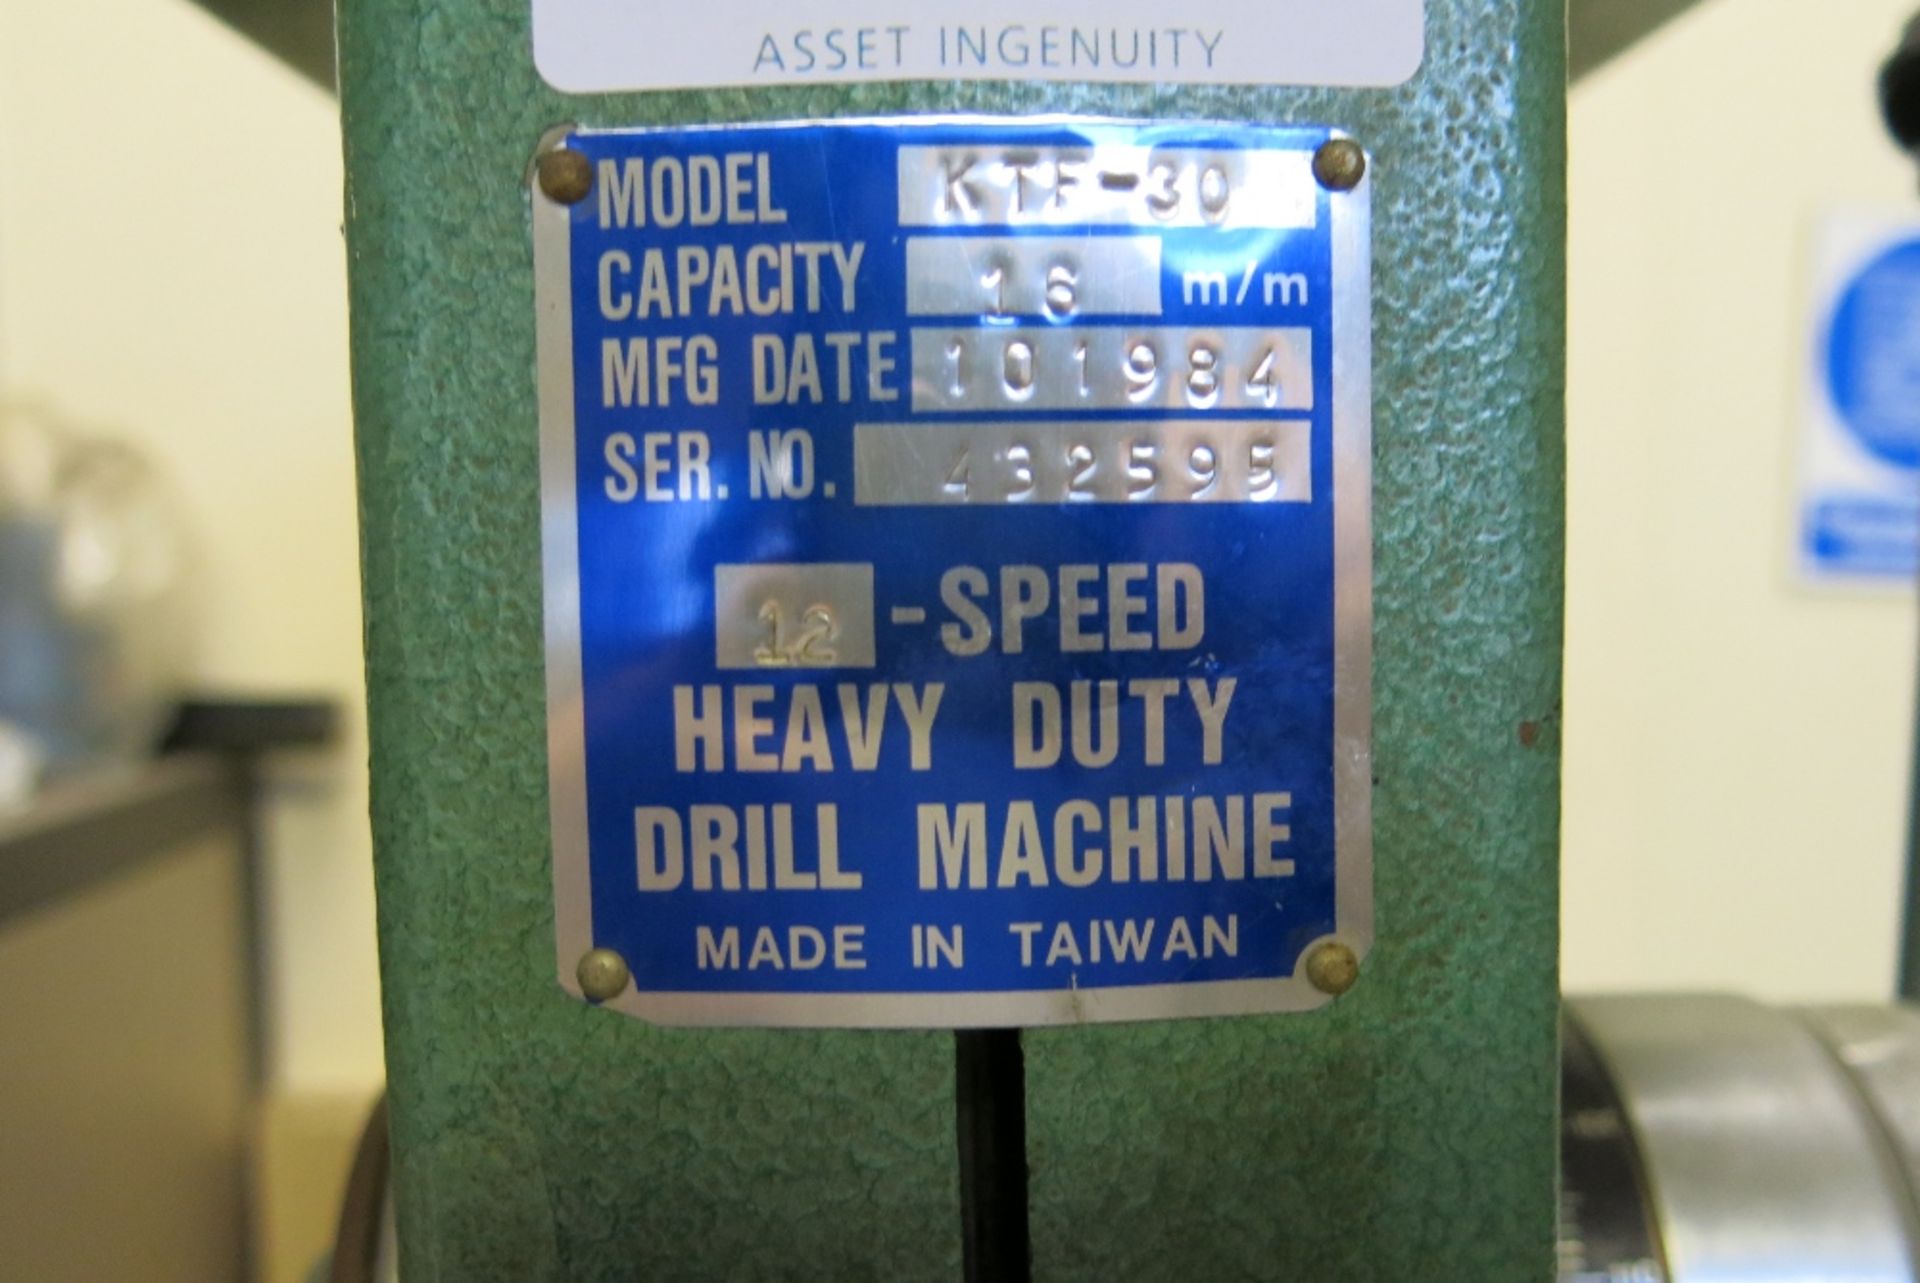 Pillar drill Model KTF-30, 12 speed - Image 2 of 2